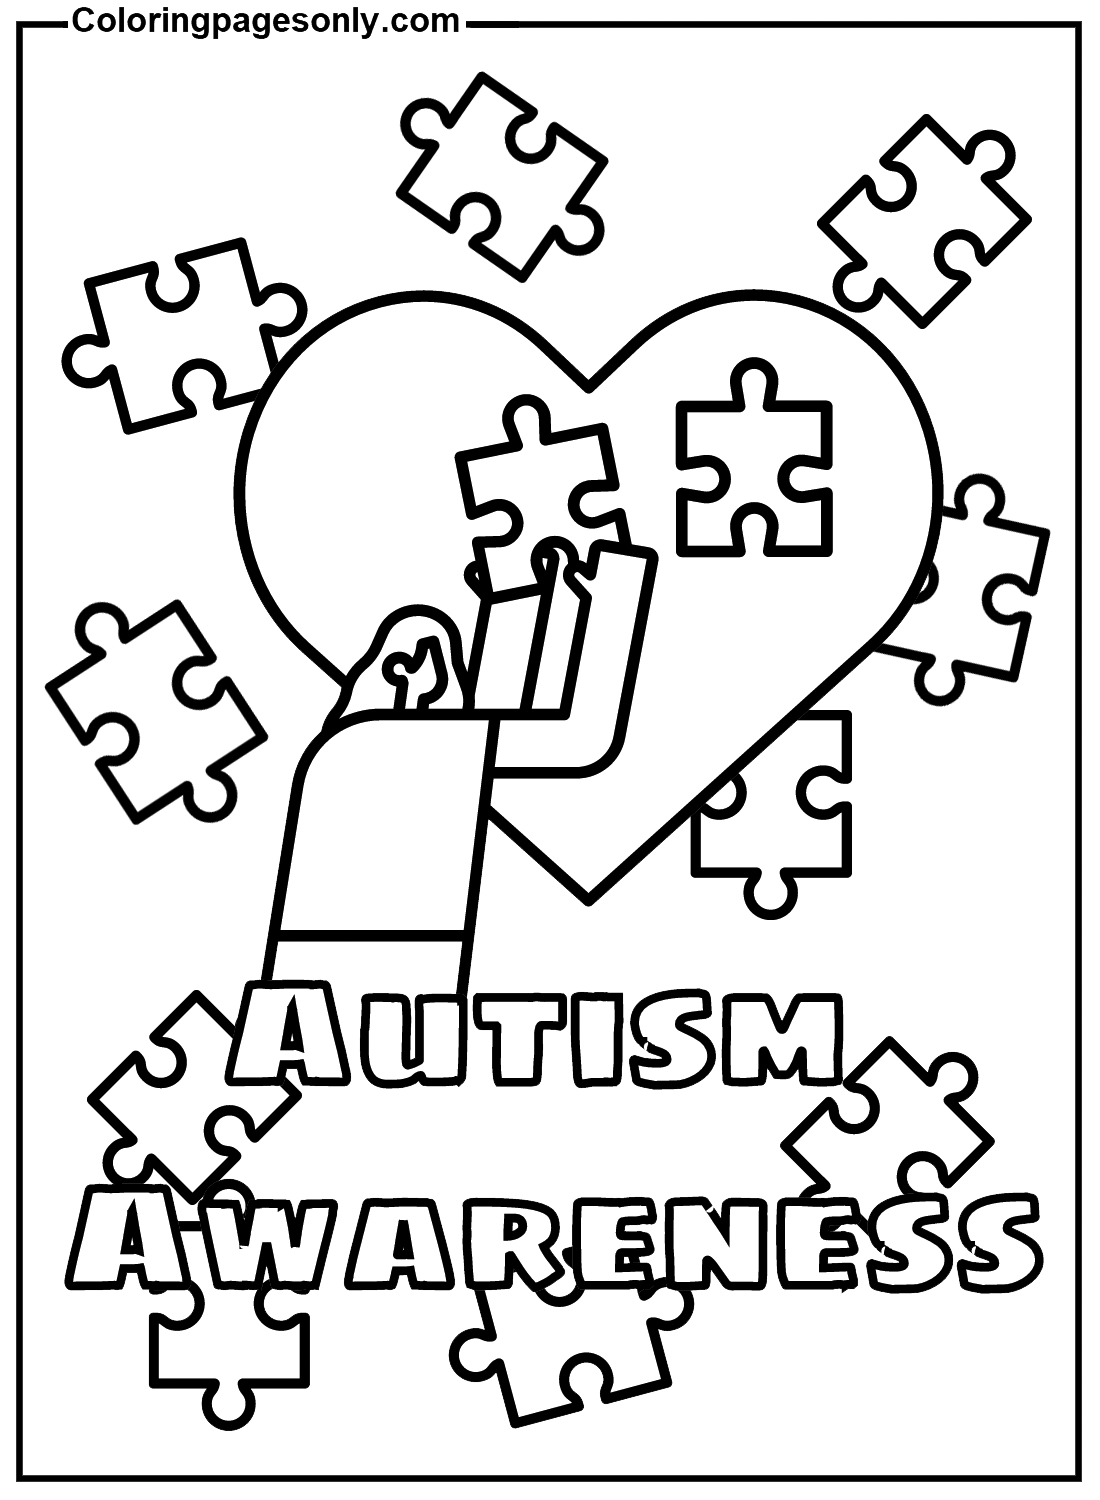 Kostenlose Autismus-Aufklärung vom Welt-Autismus-Aufklärungstag